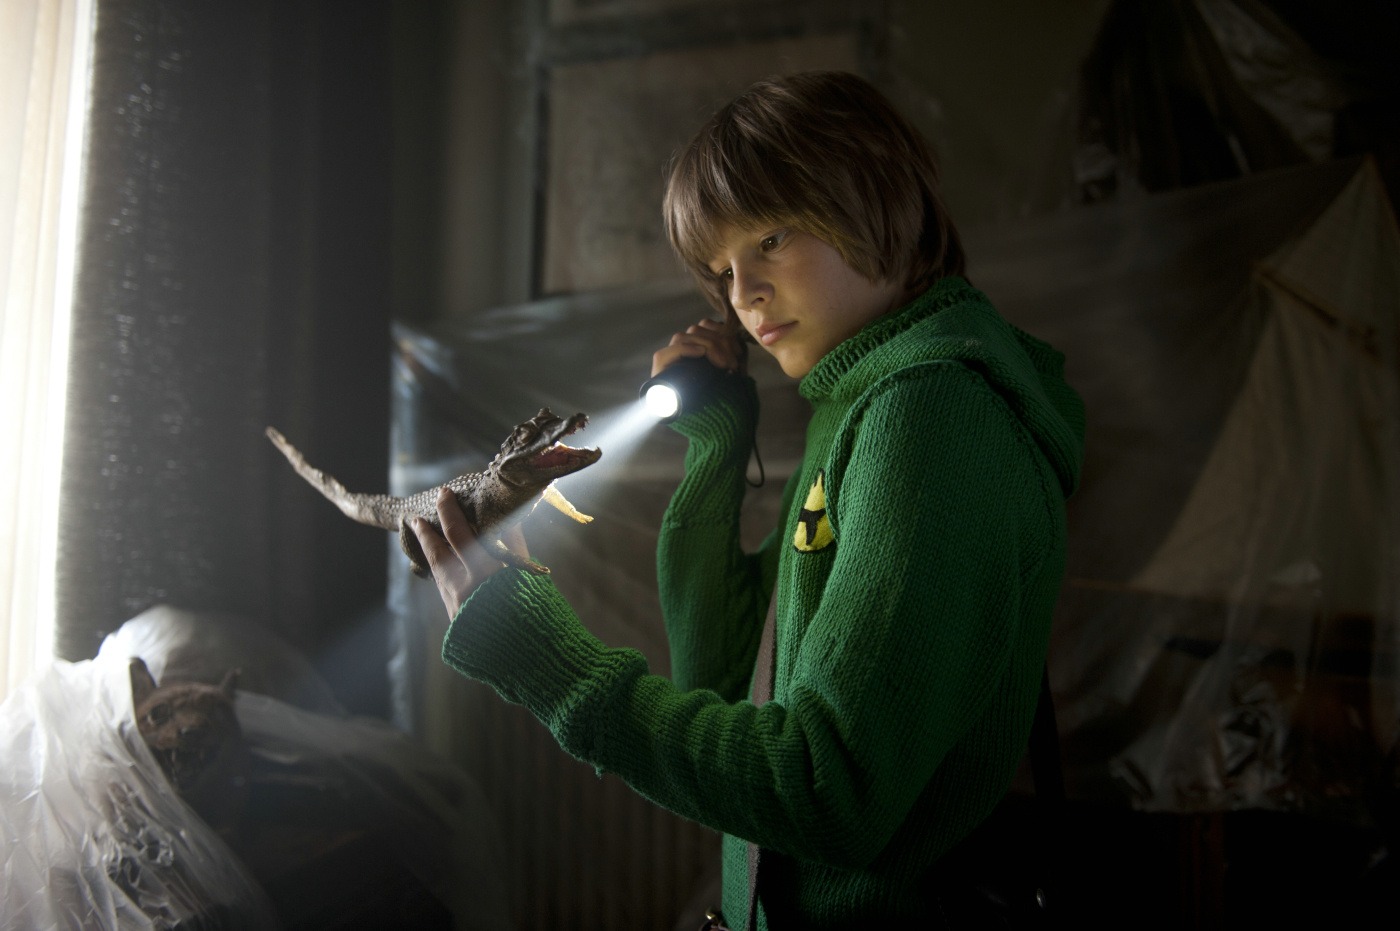 Ein Junge in einem grünen Pullover steht in einem dunklen Zimmer und leuchtet mit einer Taschenlampe auf ein kleines Krokodil in seiner Hand.